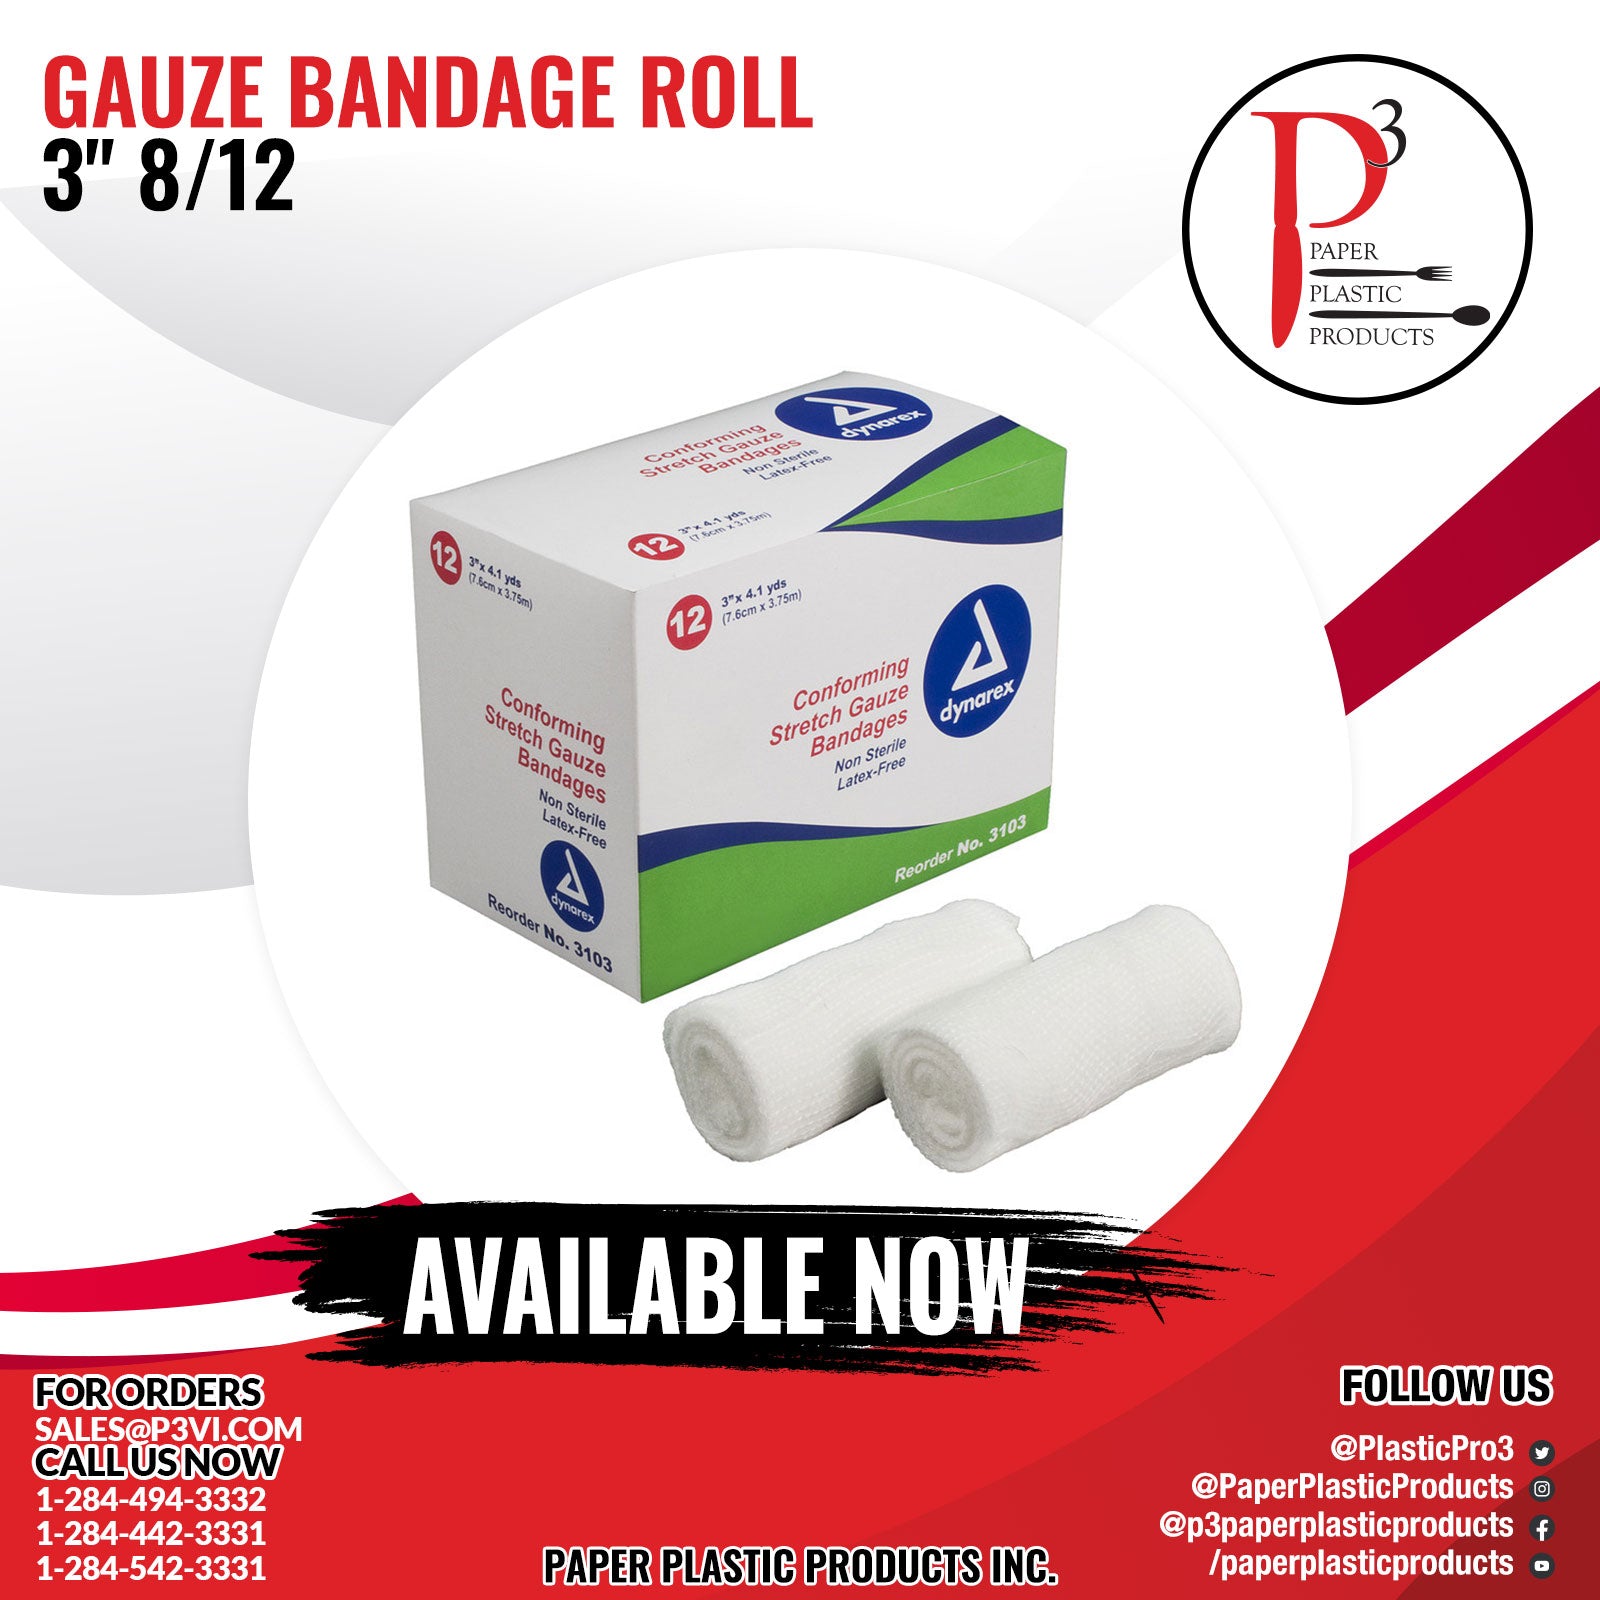 Gauze Bandage Roll 3" 8/12